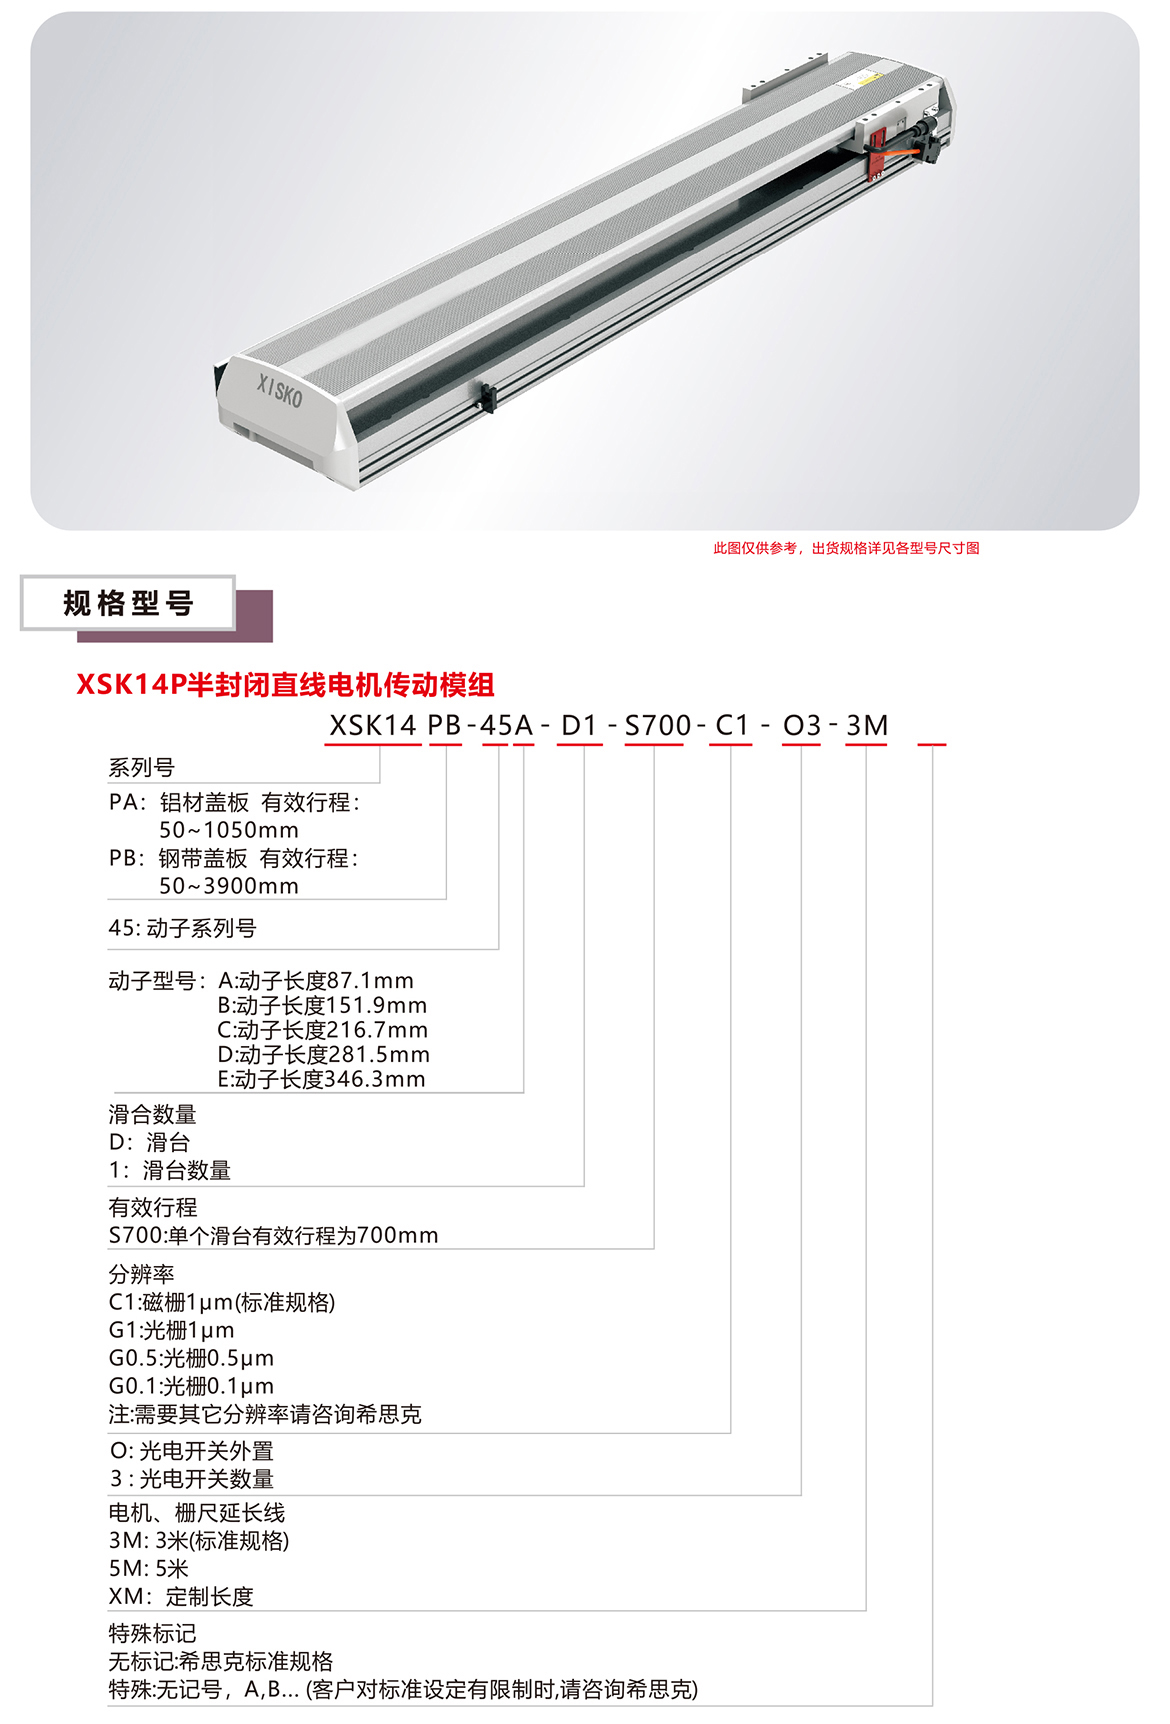 XSK14P系列直线电机模组产品规格选型表